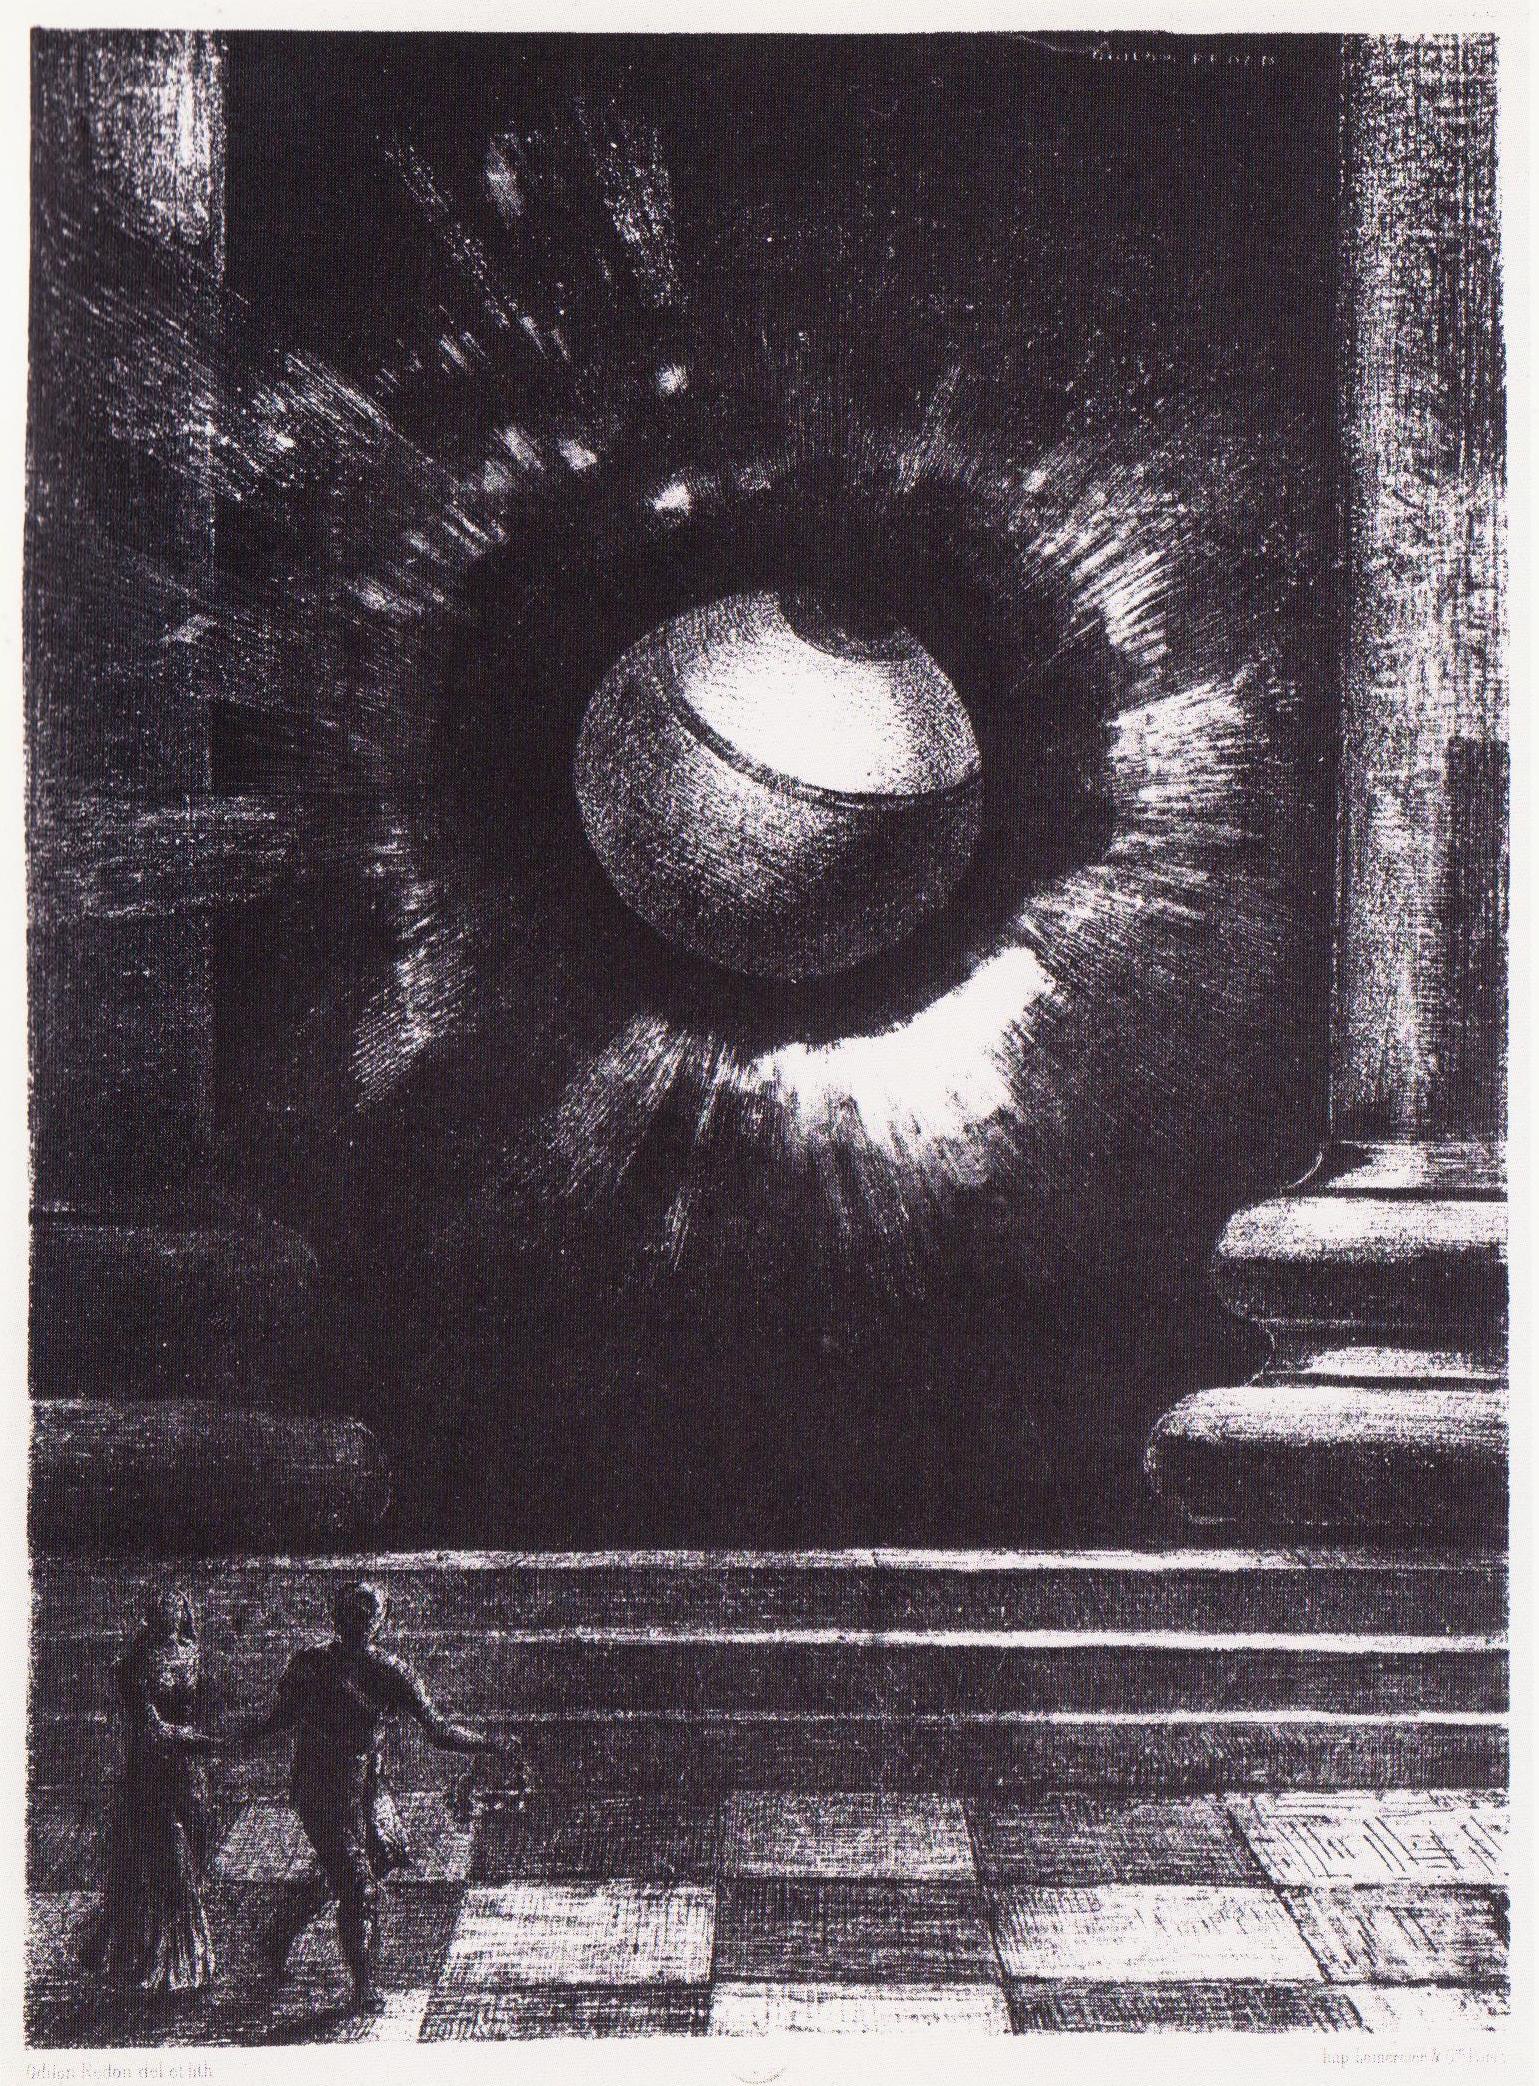 視野 by Odilon Redon - 1879 - 27.4 x 19.8 公分 